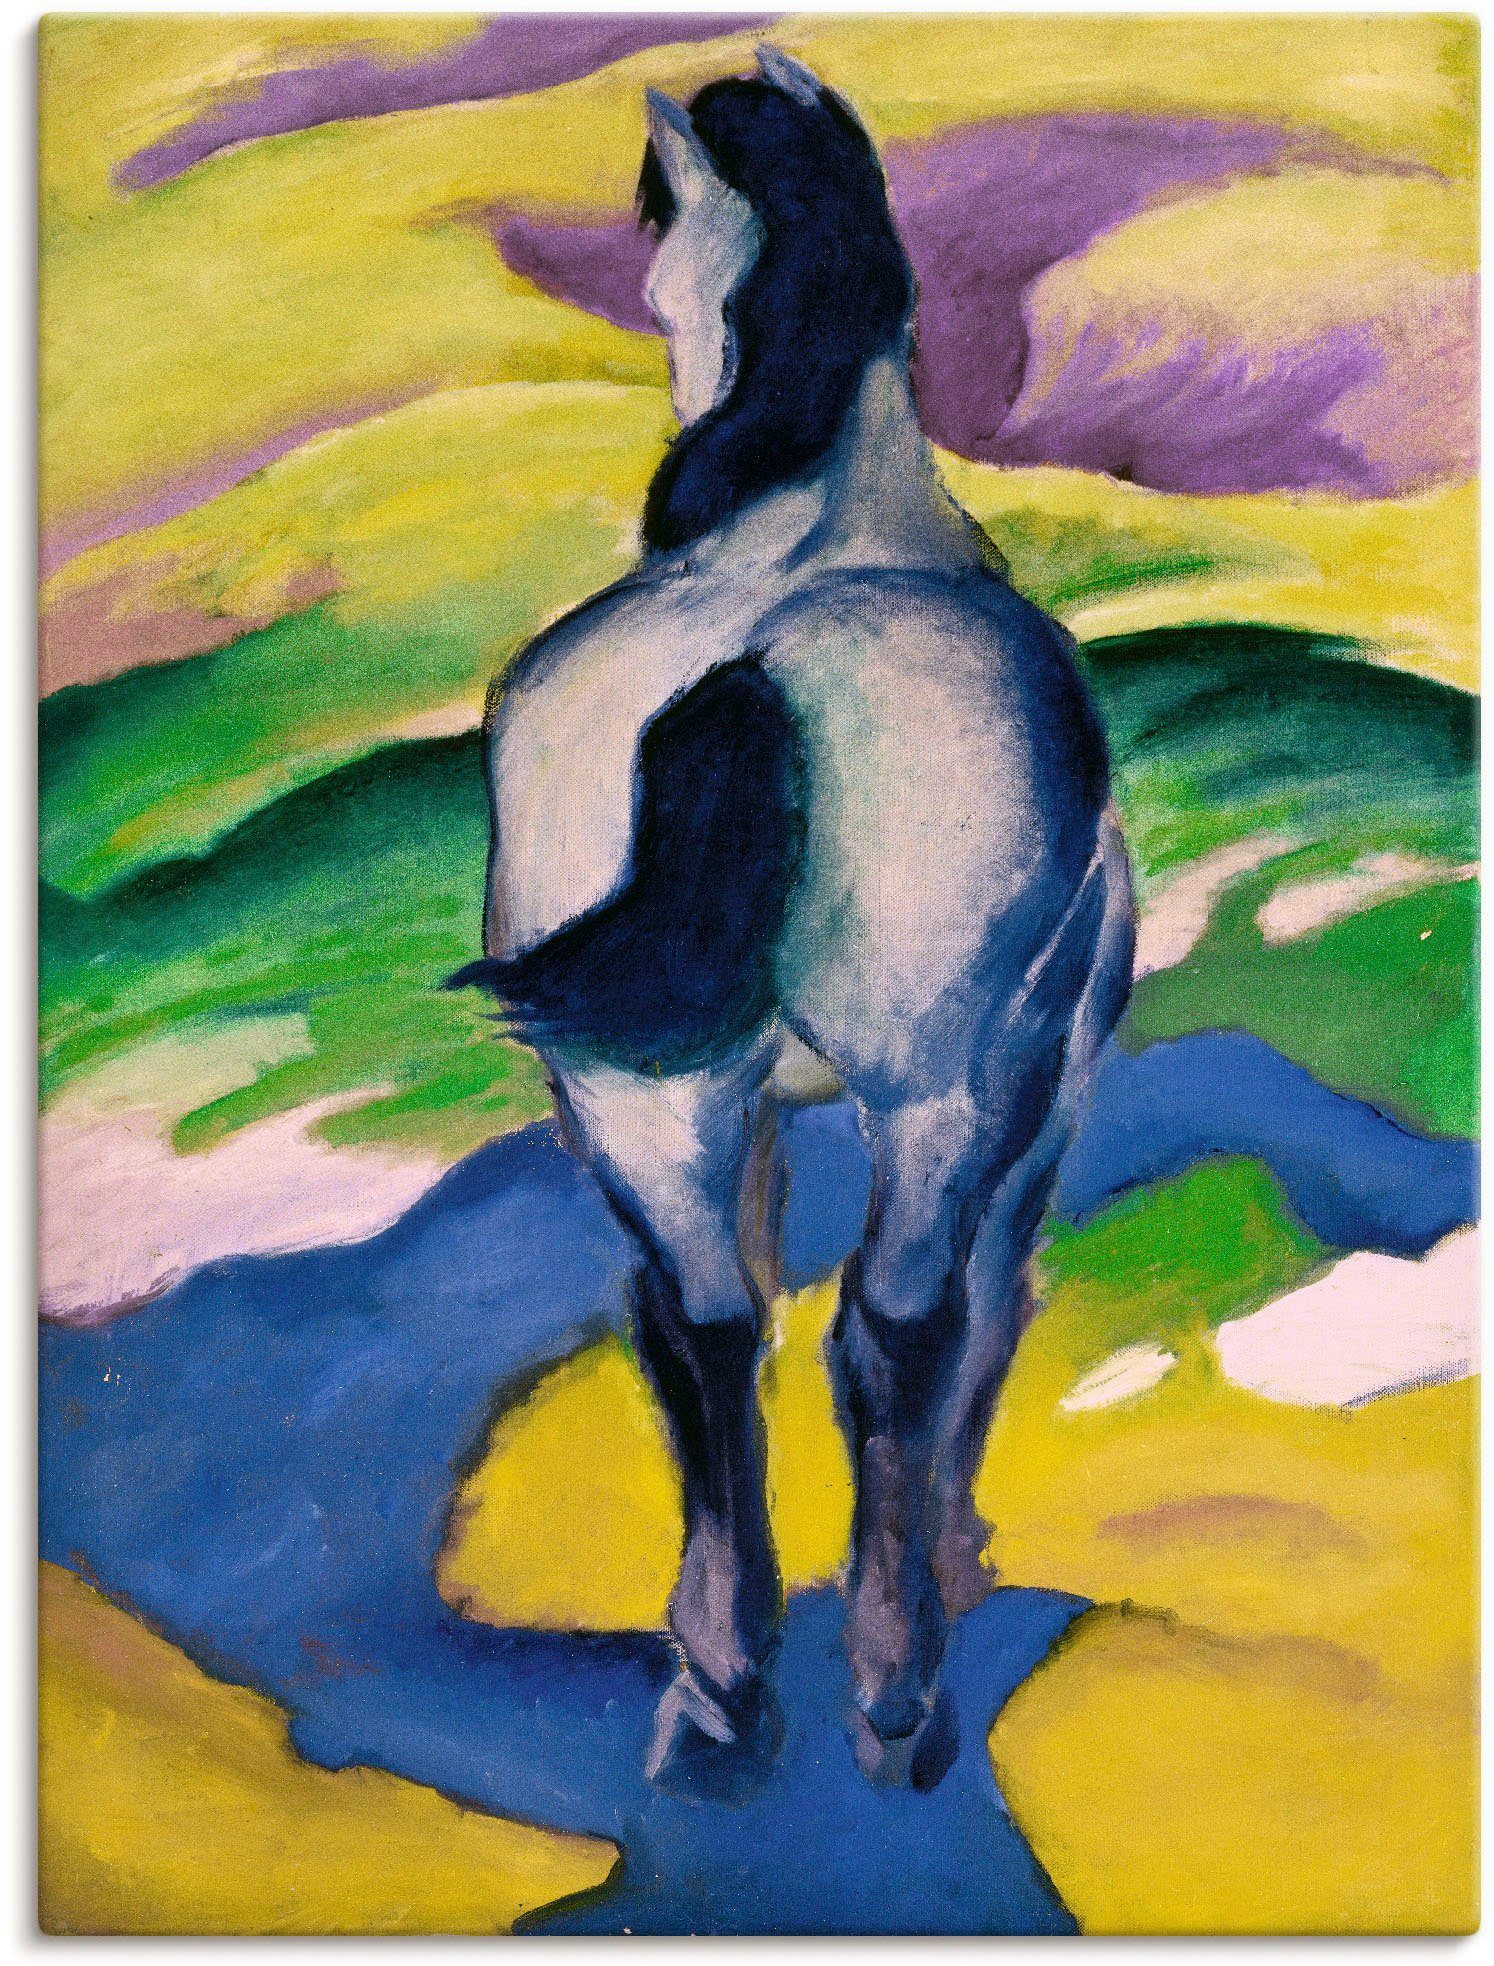 Artland Artprint Blauw paard II. 1911 in vele afmetingen & productsoorten - artprint van aluminium / artprint voor buiten, artprint op linnen, poster, muursticker / wandfolie ook g